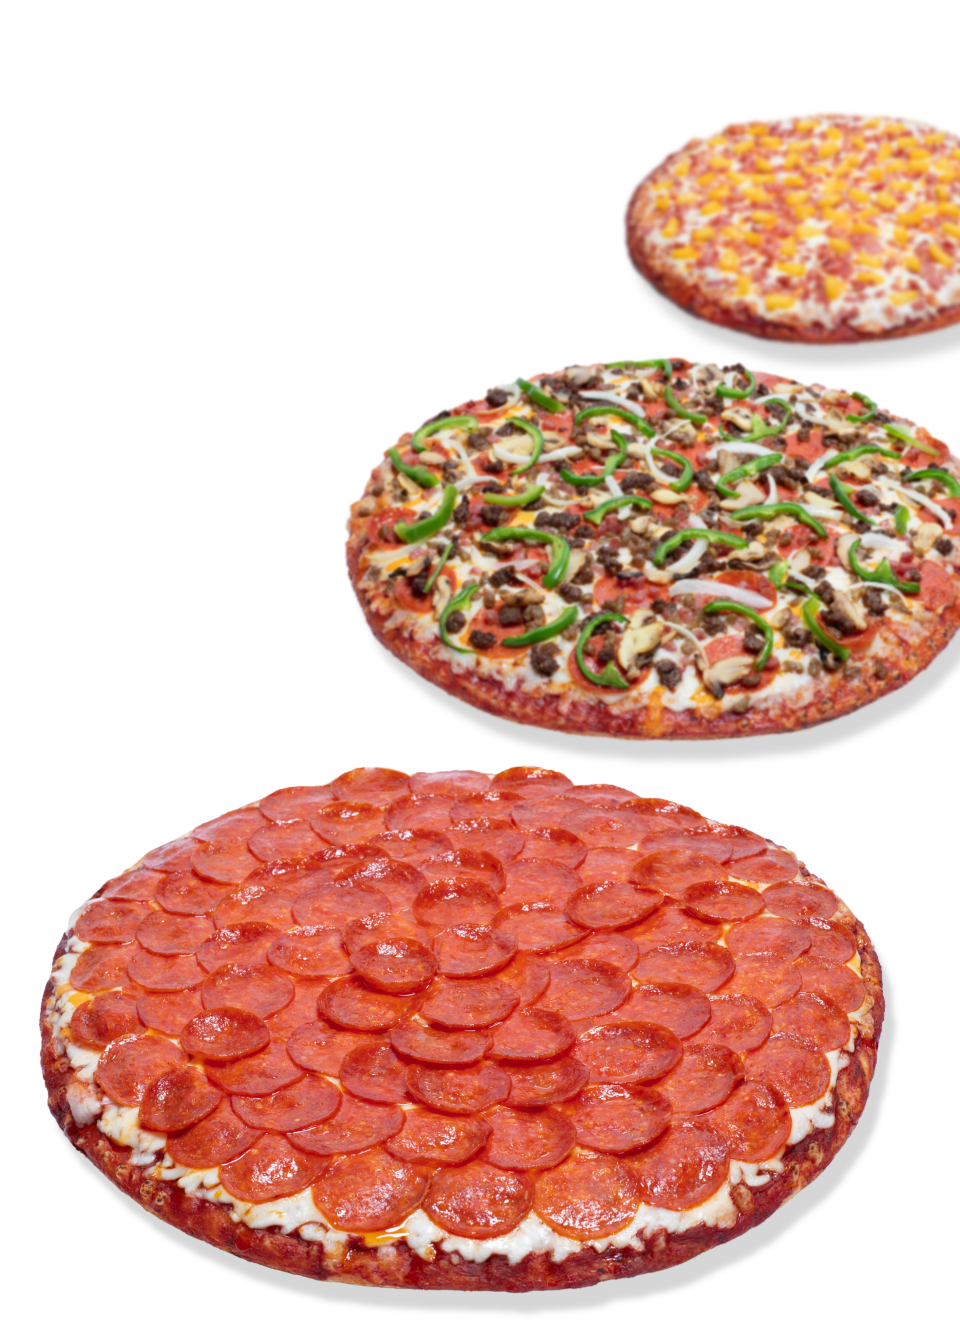 Three Pizzas from Happy Joe's Pizza